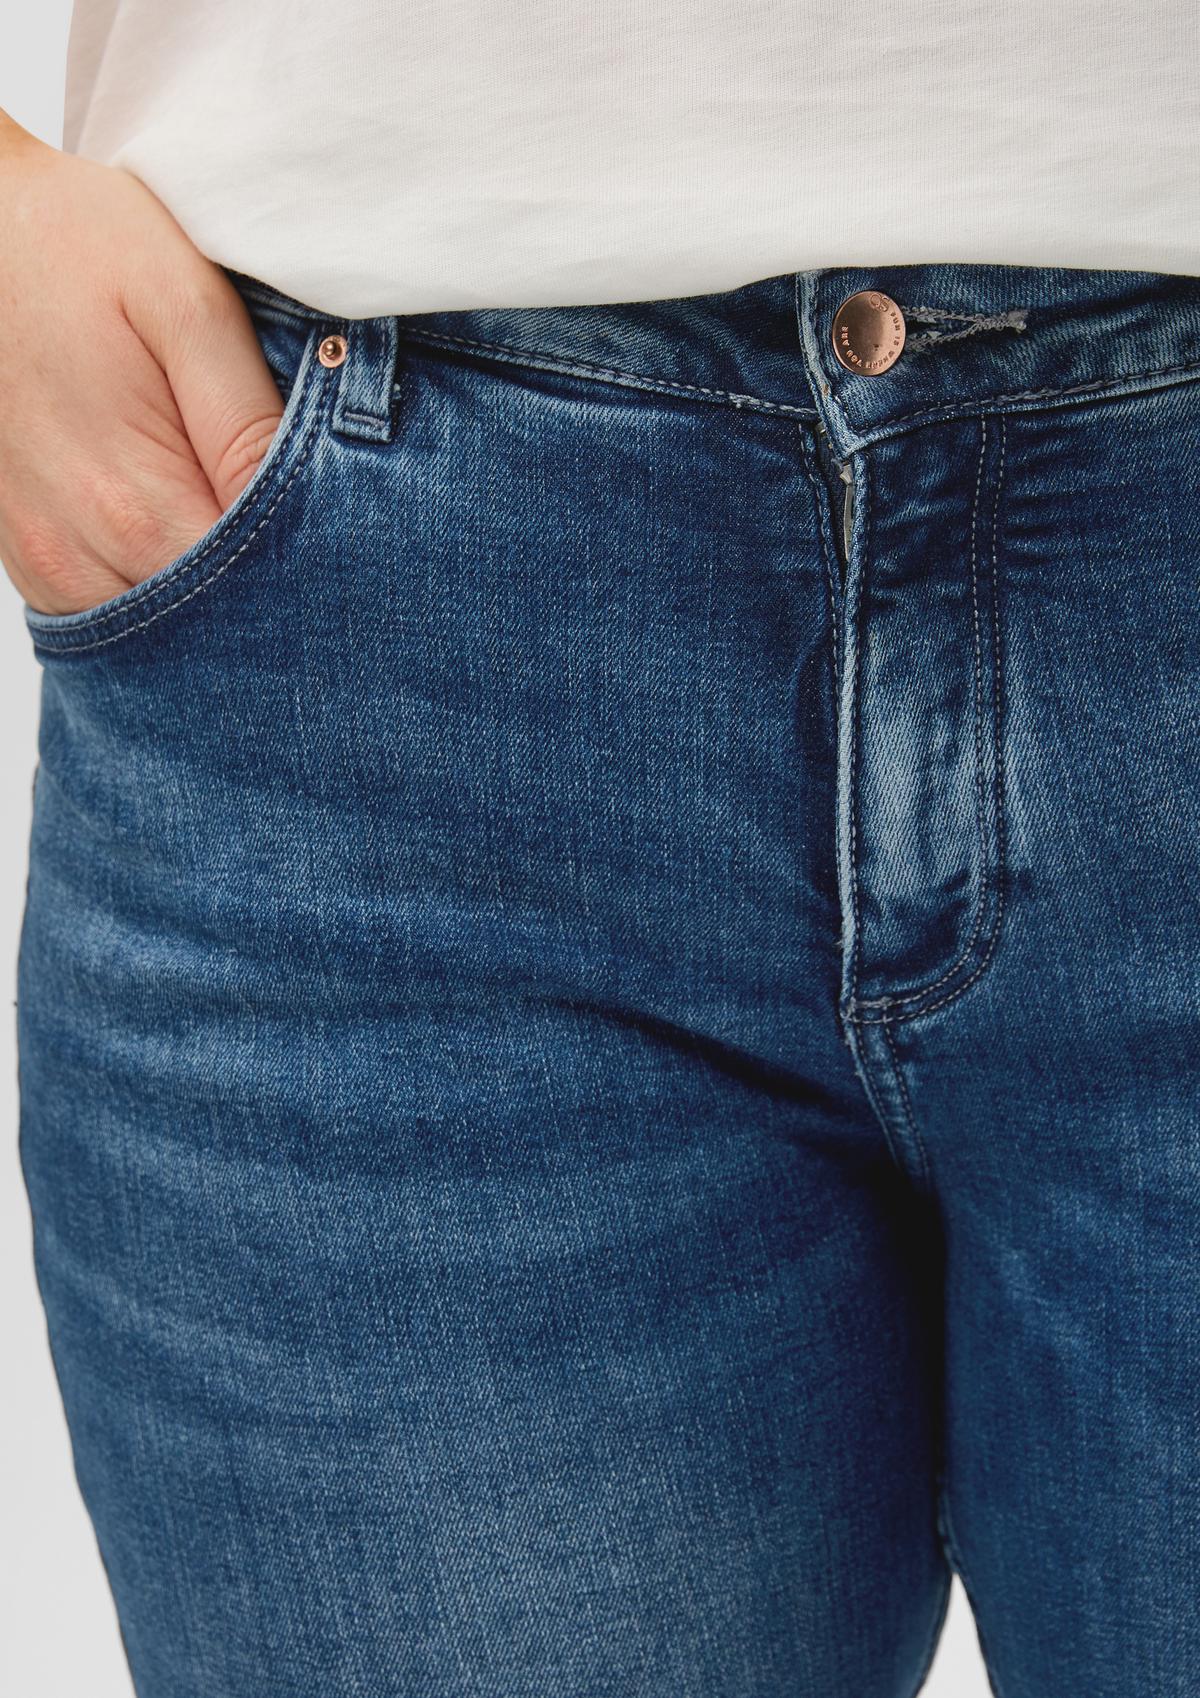 s.Oliver Jeans hlače/kroj Mid Rise/ozke hlačnice